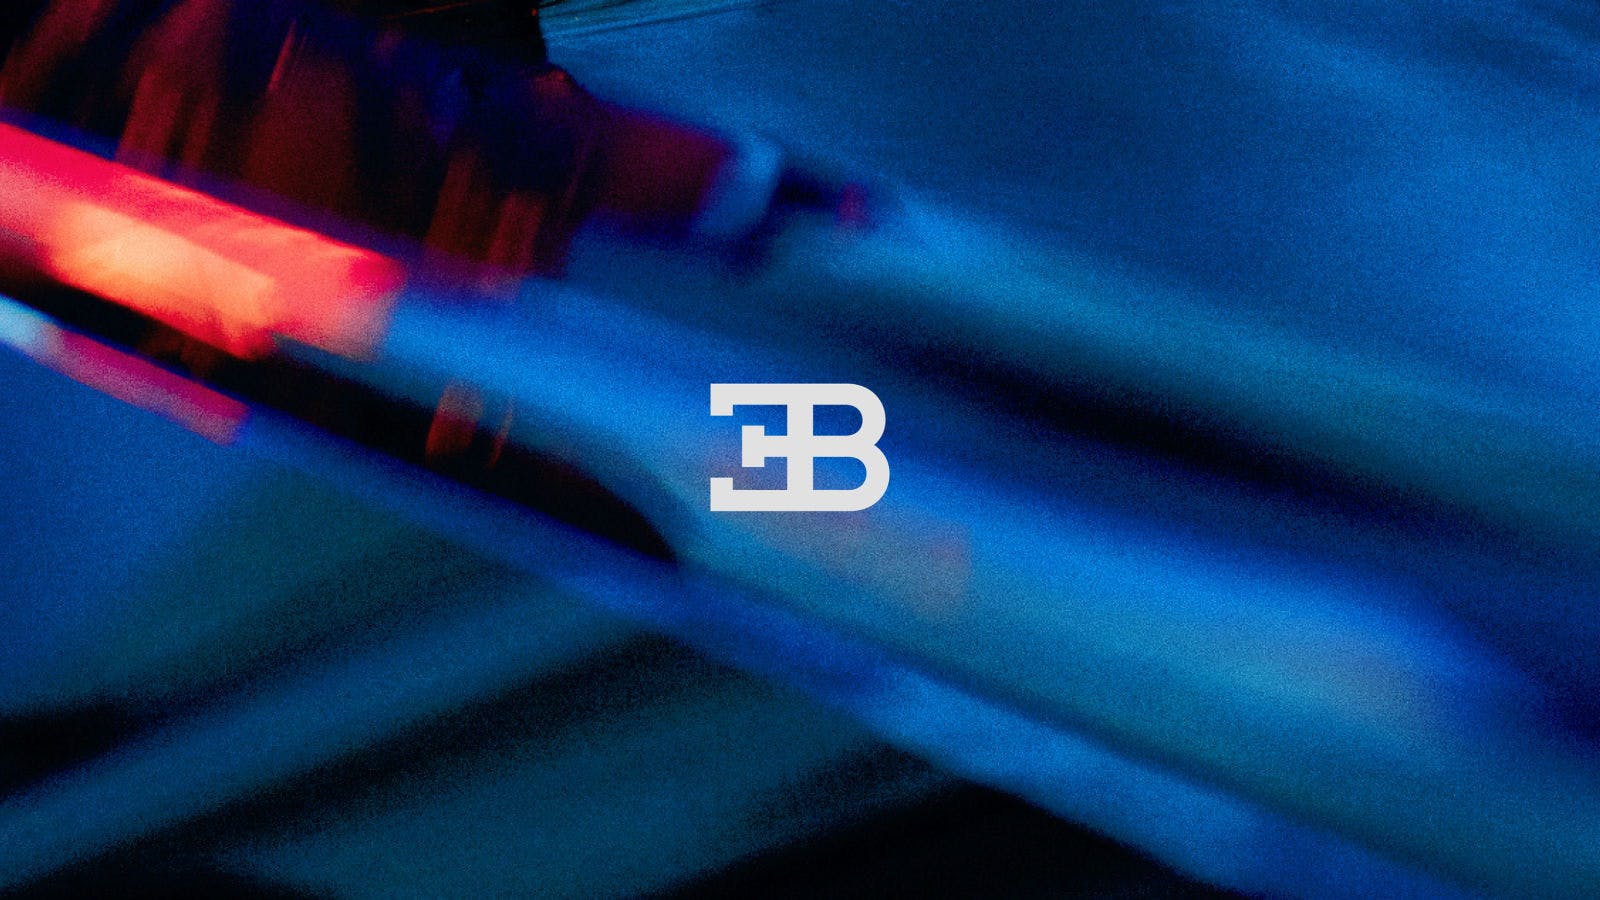 The new vibrant Bugatti Blue references the brand’s French origins and the iconic ‘EB’ logo Ettore Bugatti’s initials.